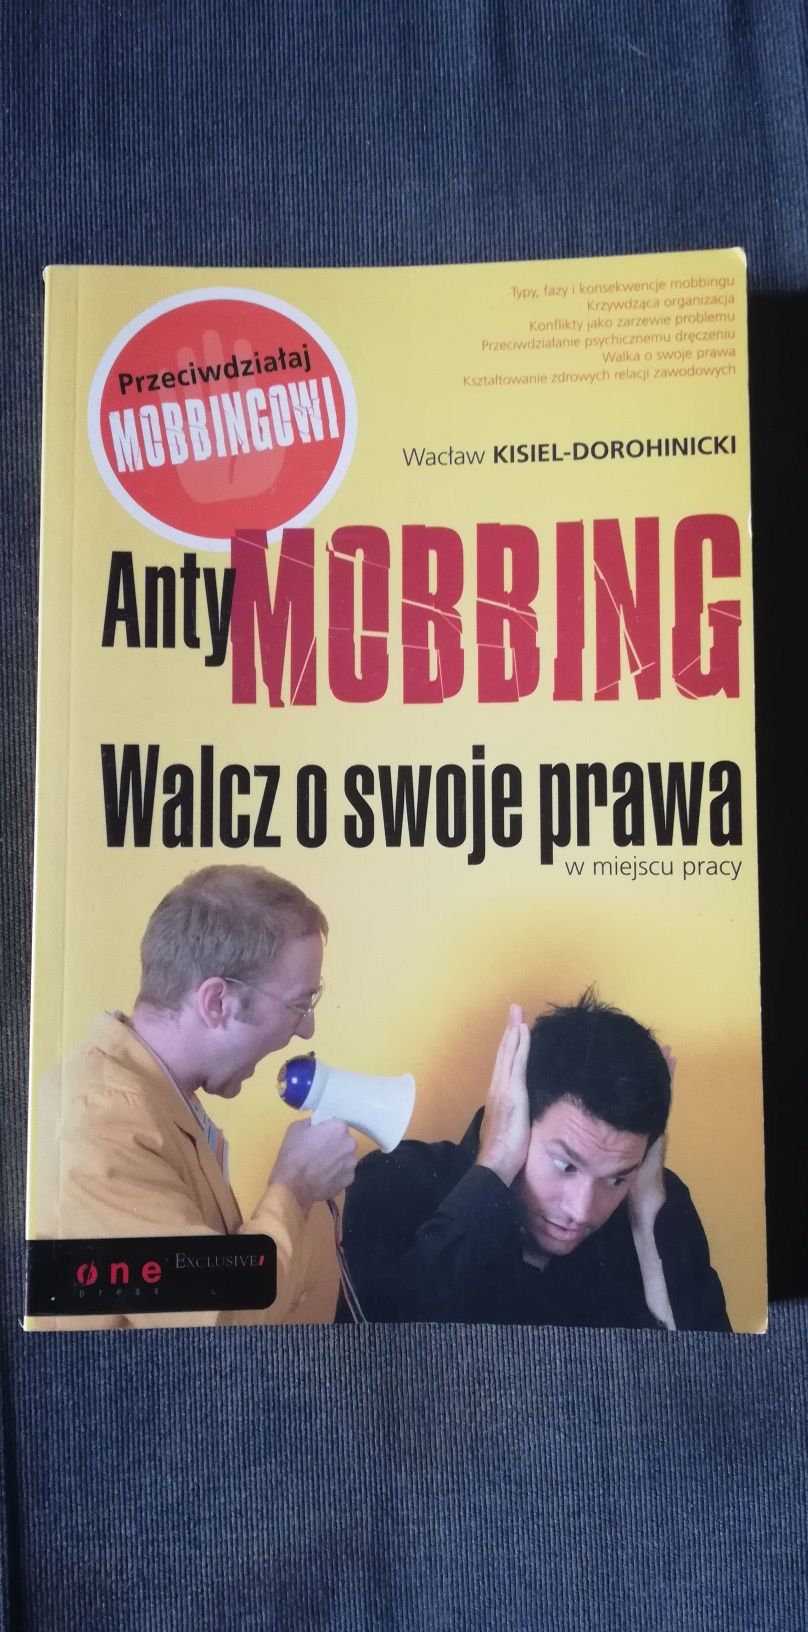 Antymobbing walcz o swoje prawa-Wacław Kisiel-Dorohinicki